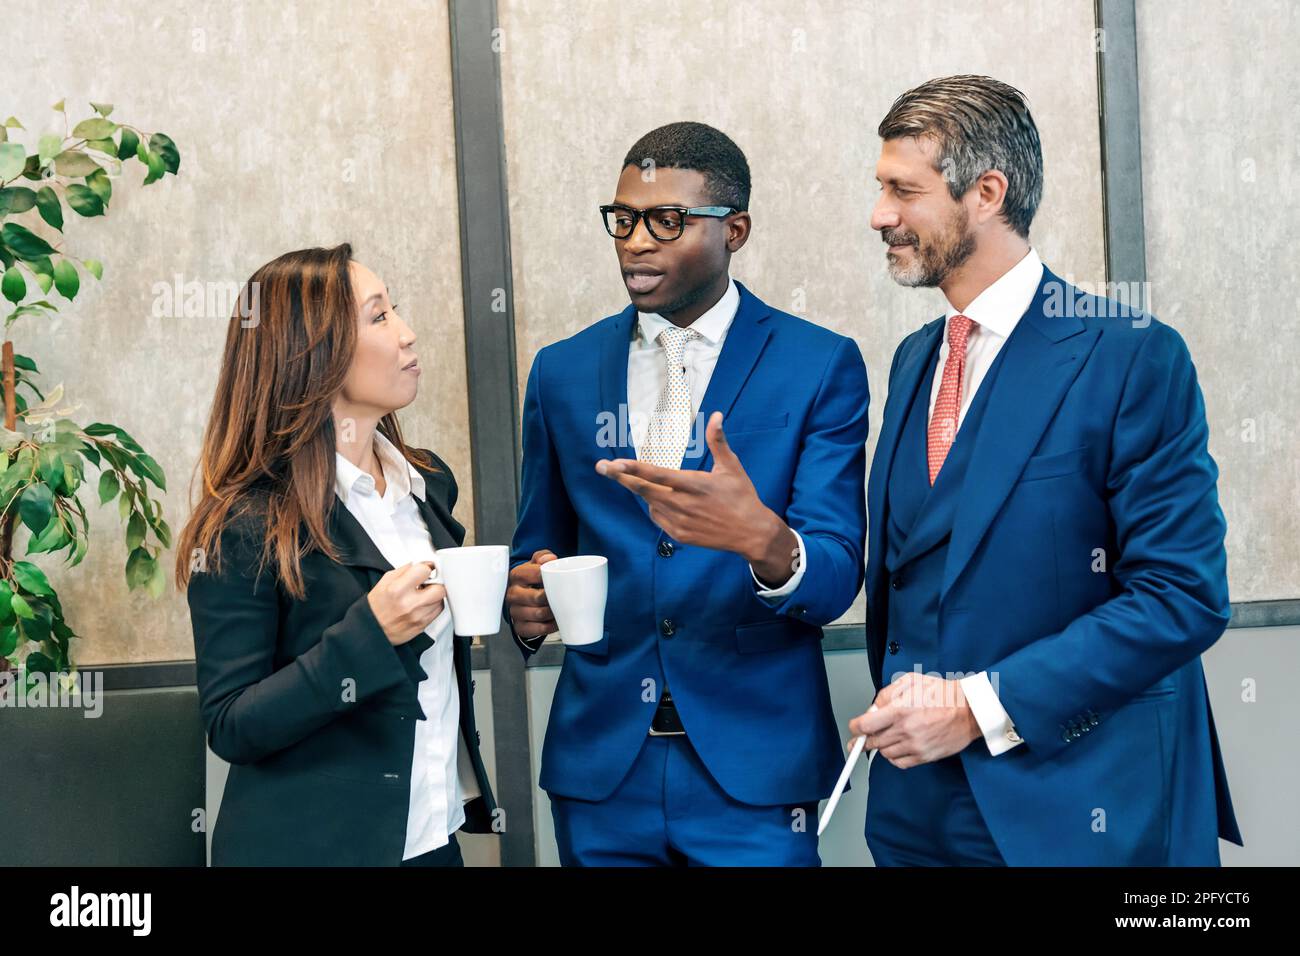 Multiethnische Kollegen in stilvollen Kleidern stehen mit Tassen heißer Getränke und sprechen während einer Pause von der Arbeit Stockfoto